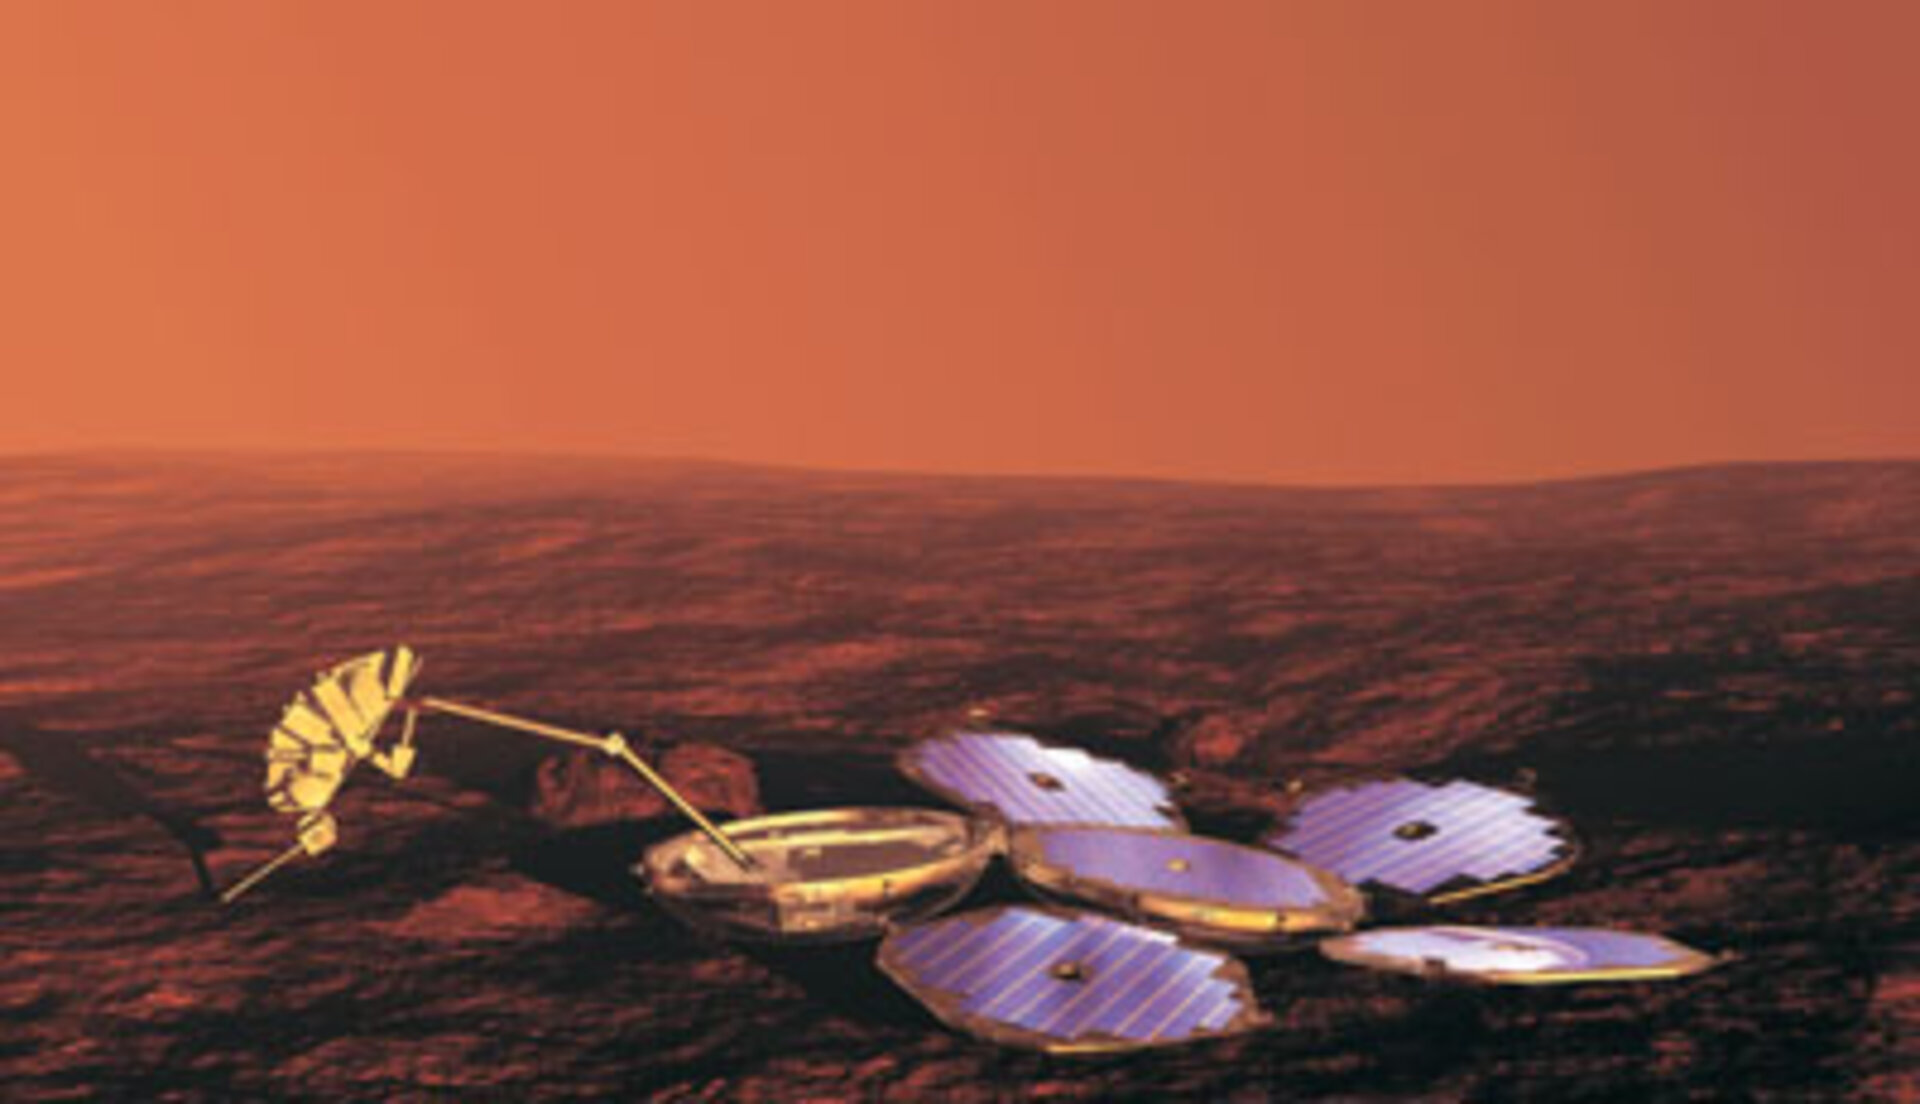 The Beagle 2 lander